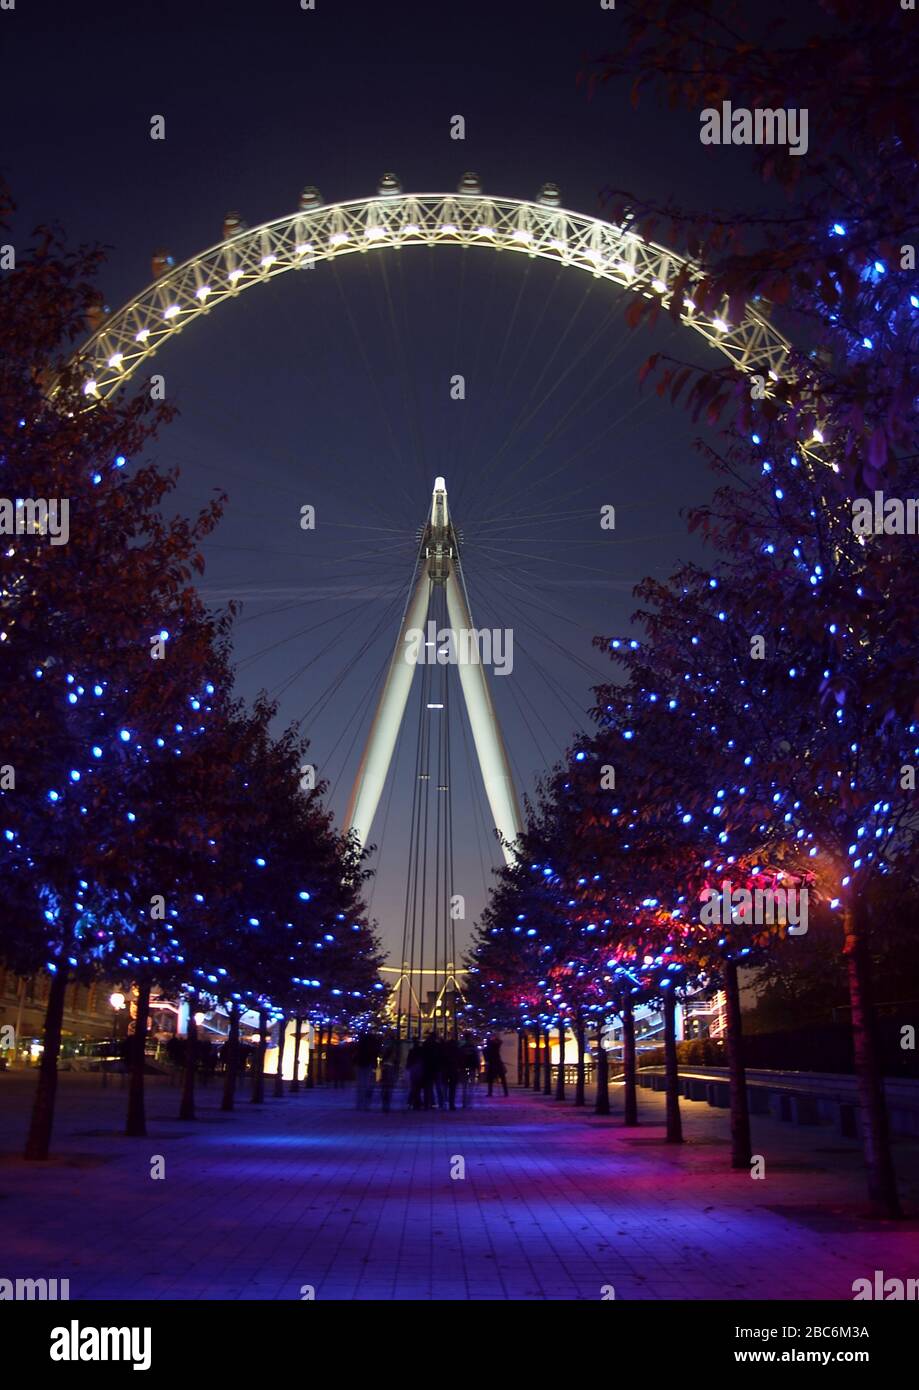 Le London Eye la nuit. Le 'Eye' est une roue géante Ferris située sur la rive sud de la Tamise, également connue sous le nom de Millennium Wheel. Banque D'Images